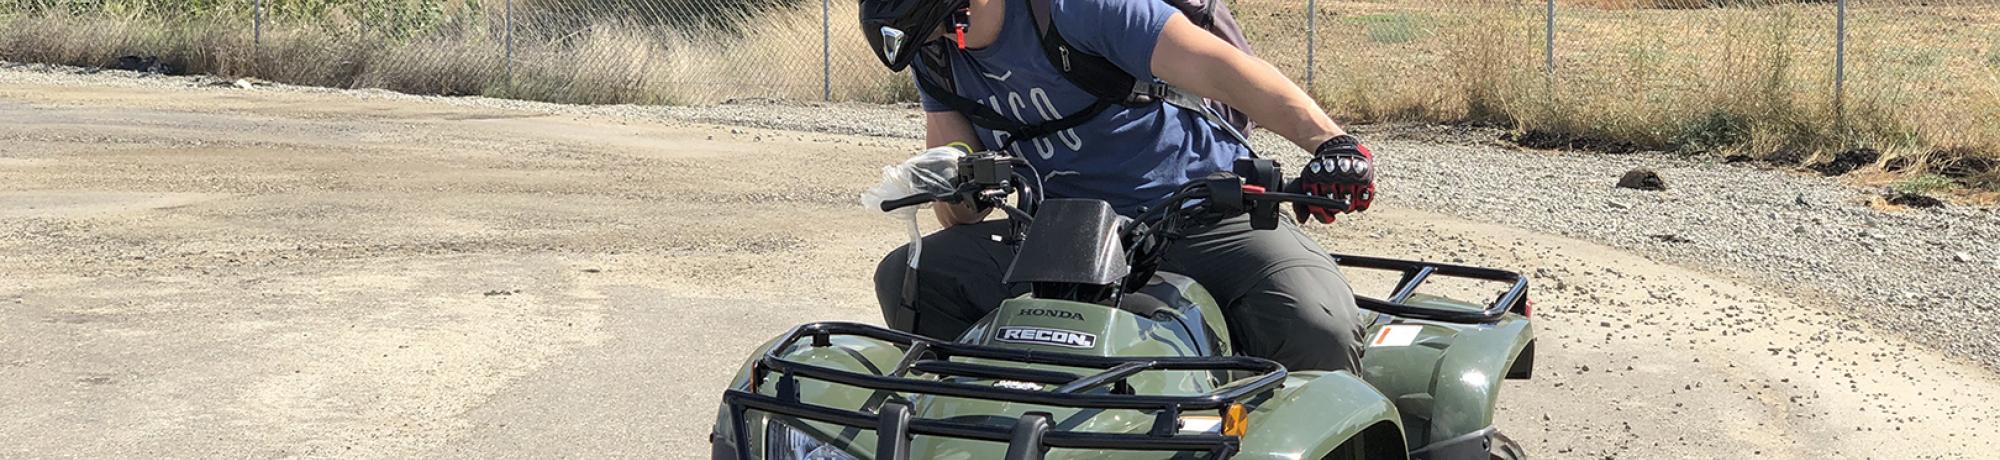 Person riding ATV